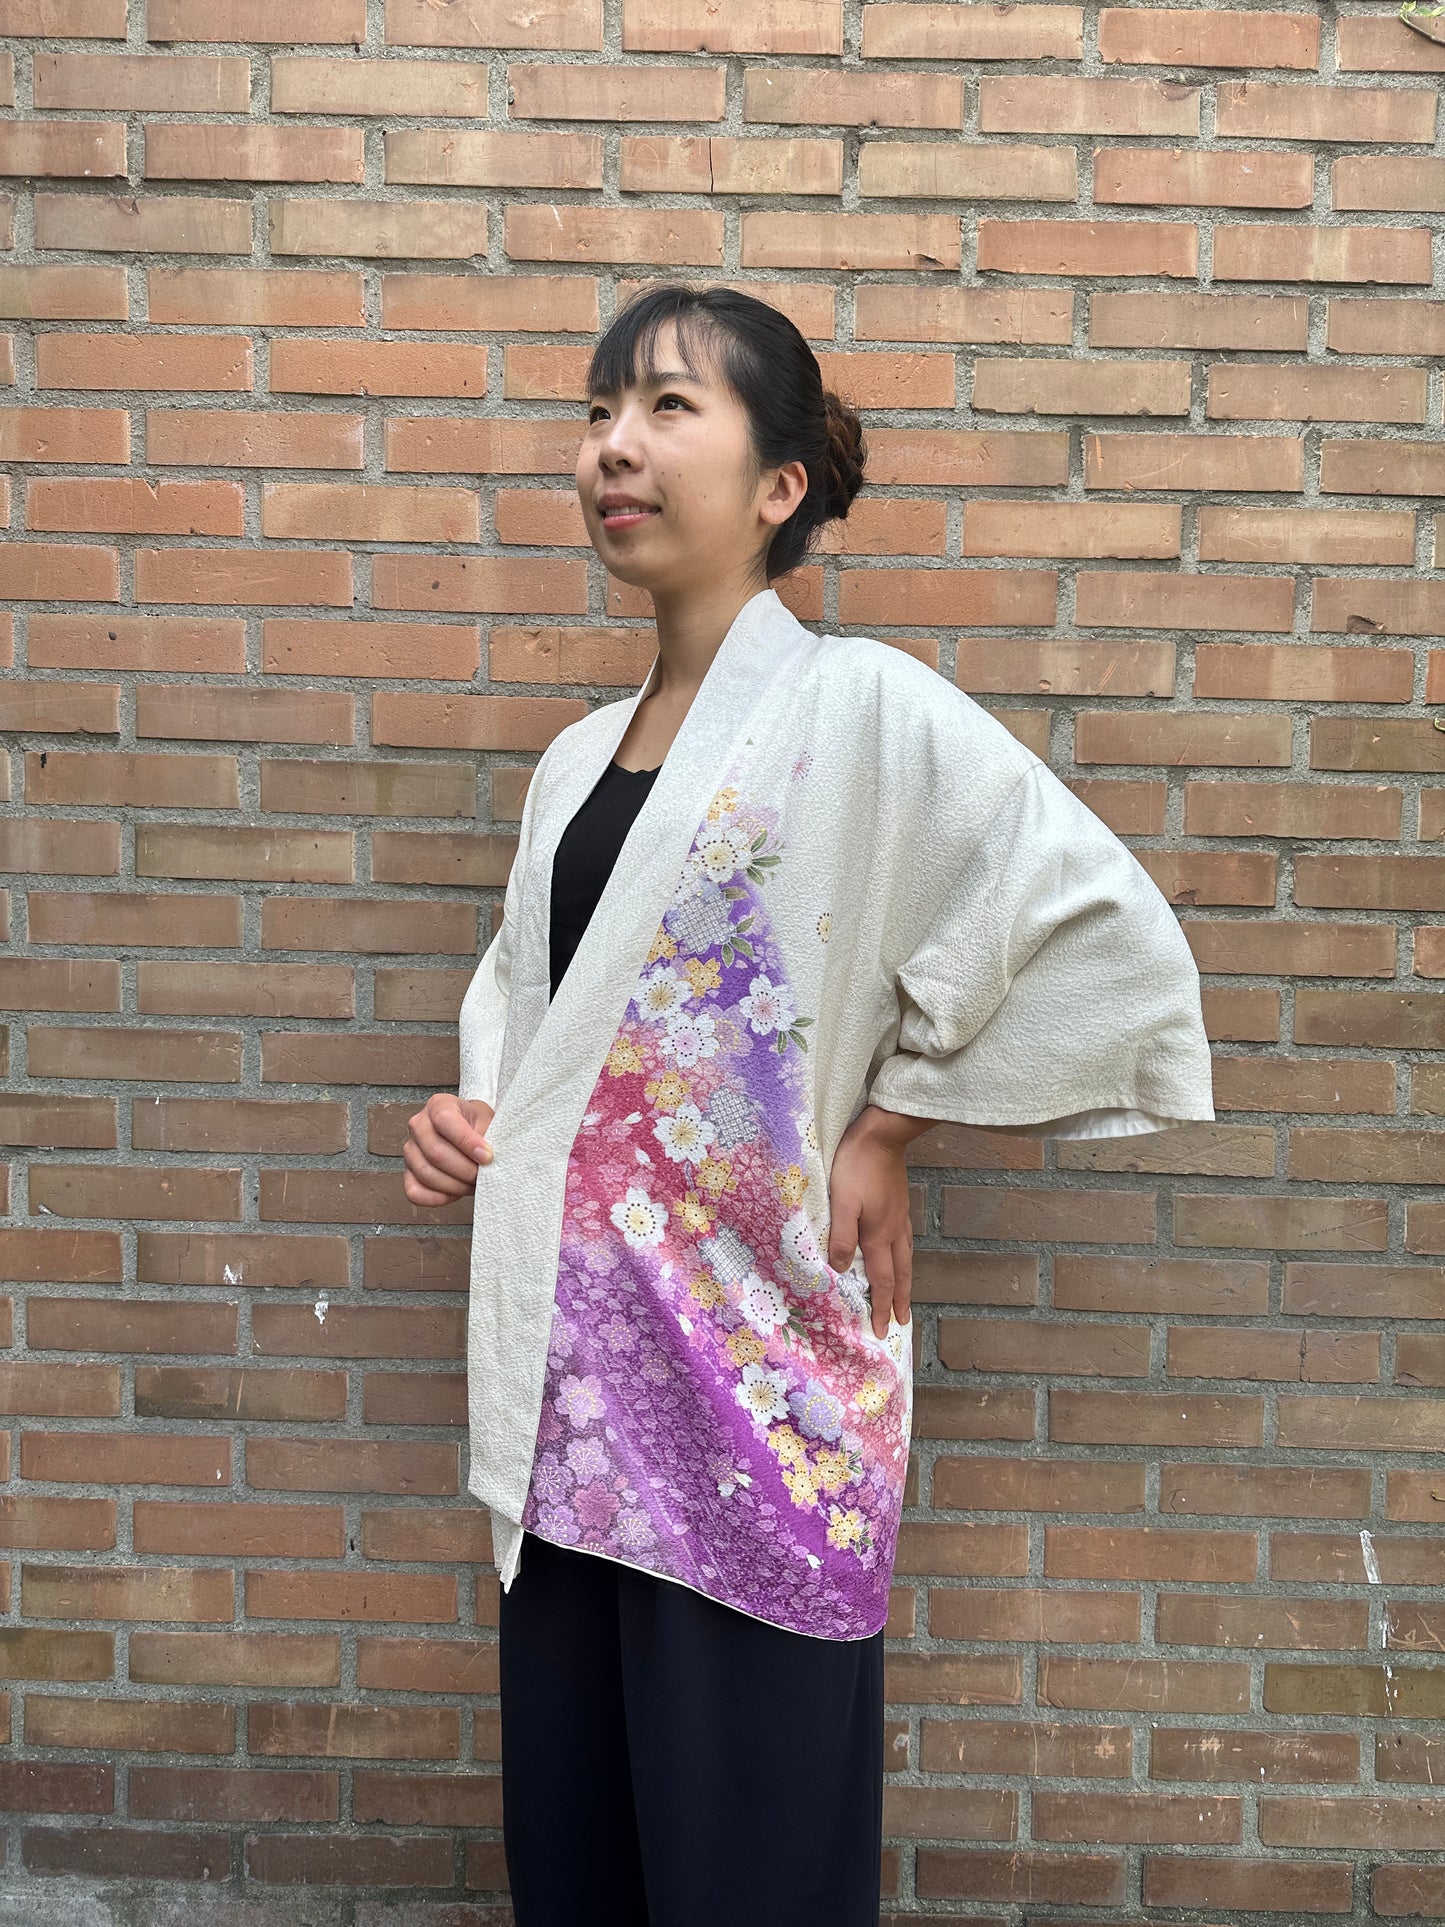 【Blanc, fleur de cerisier】 veste heureuse ＜ Excellent ・ Silk ＞ pour les hommes, pour les femmes, le kimono japonais, les vêtements unisexais japonais, unisexe, cadeaux japonais, designs originaux